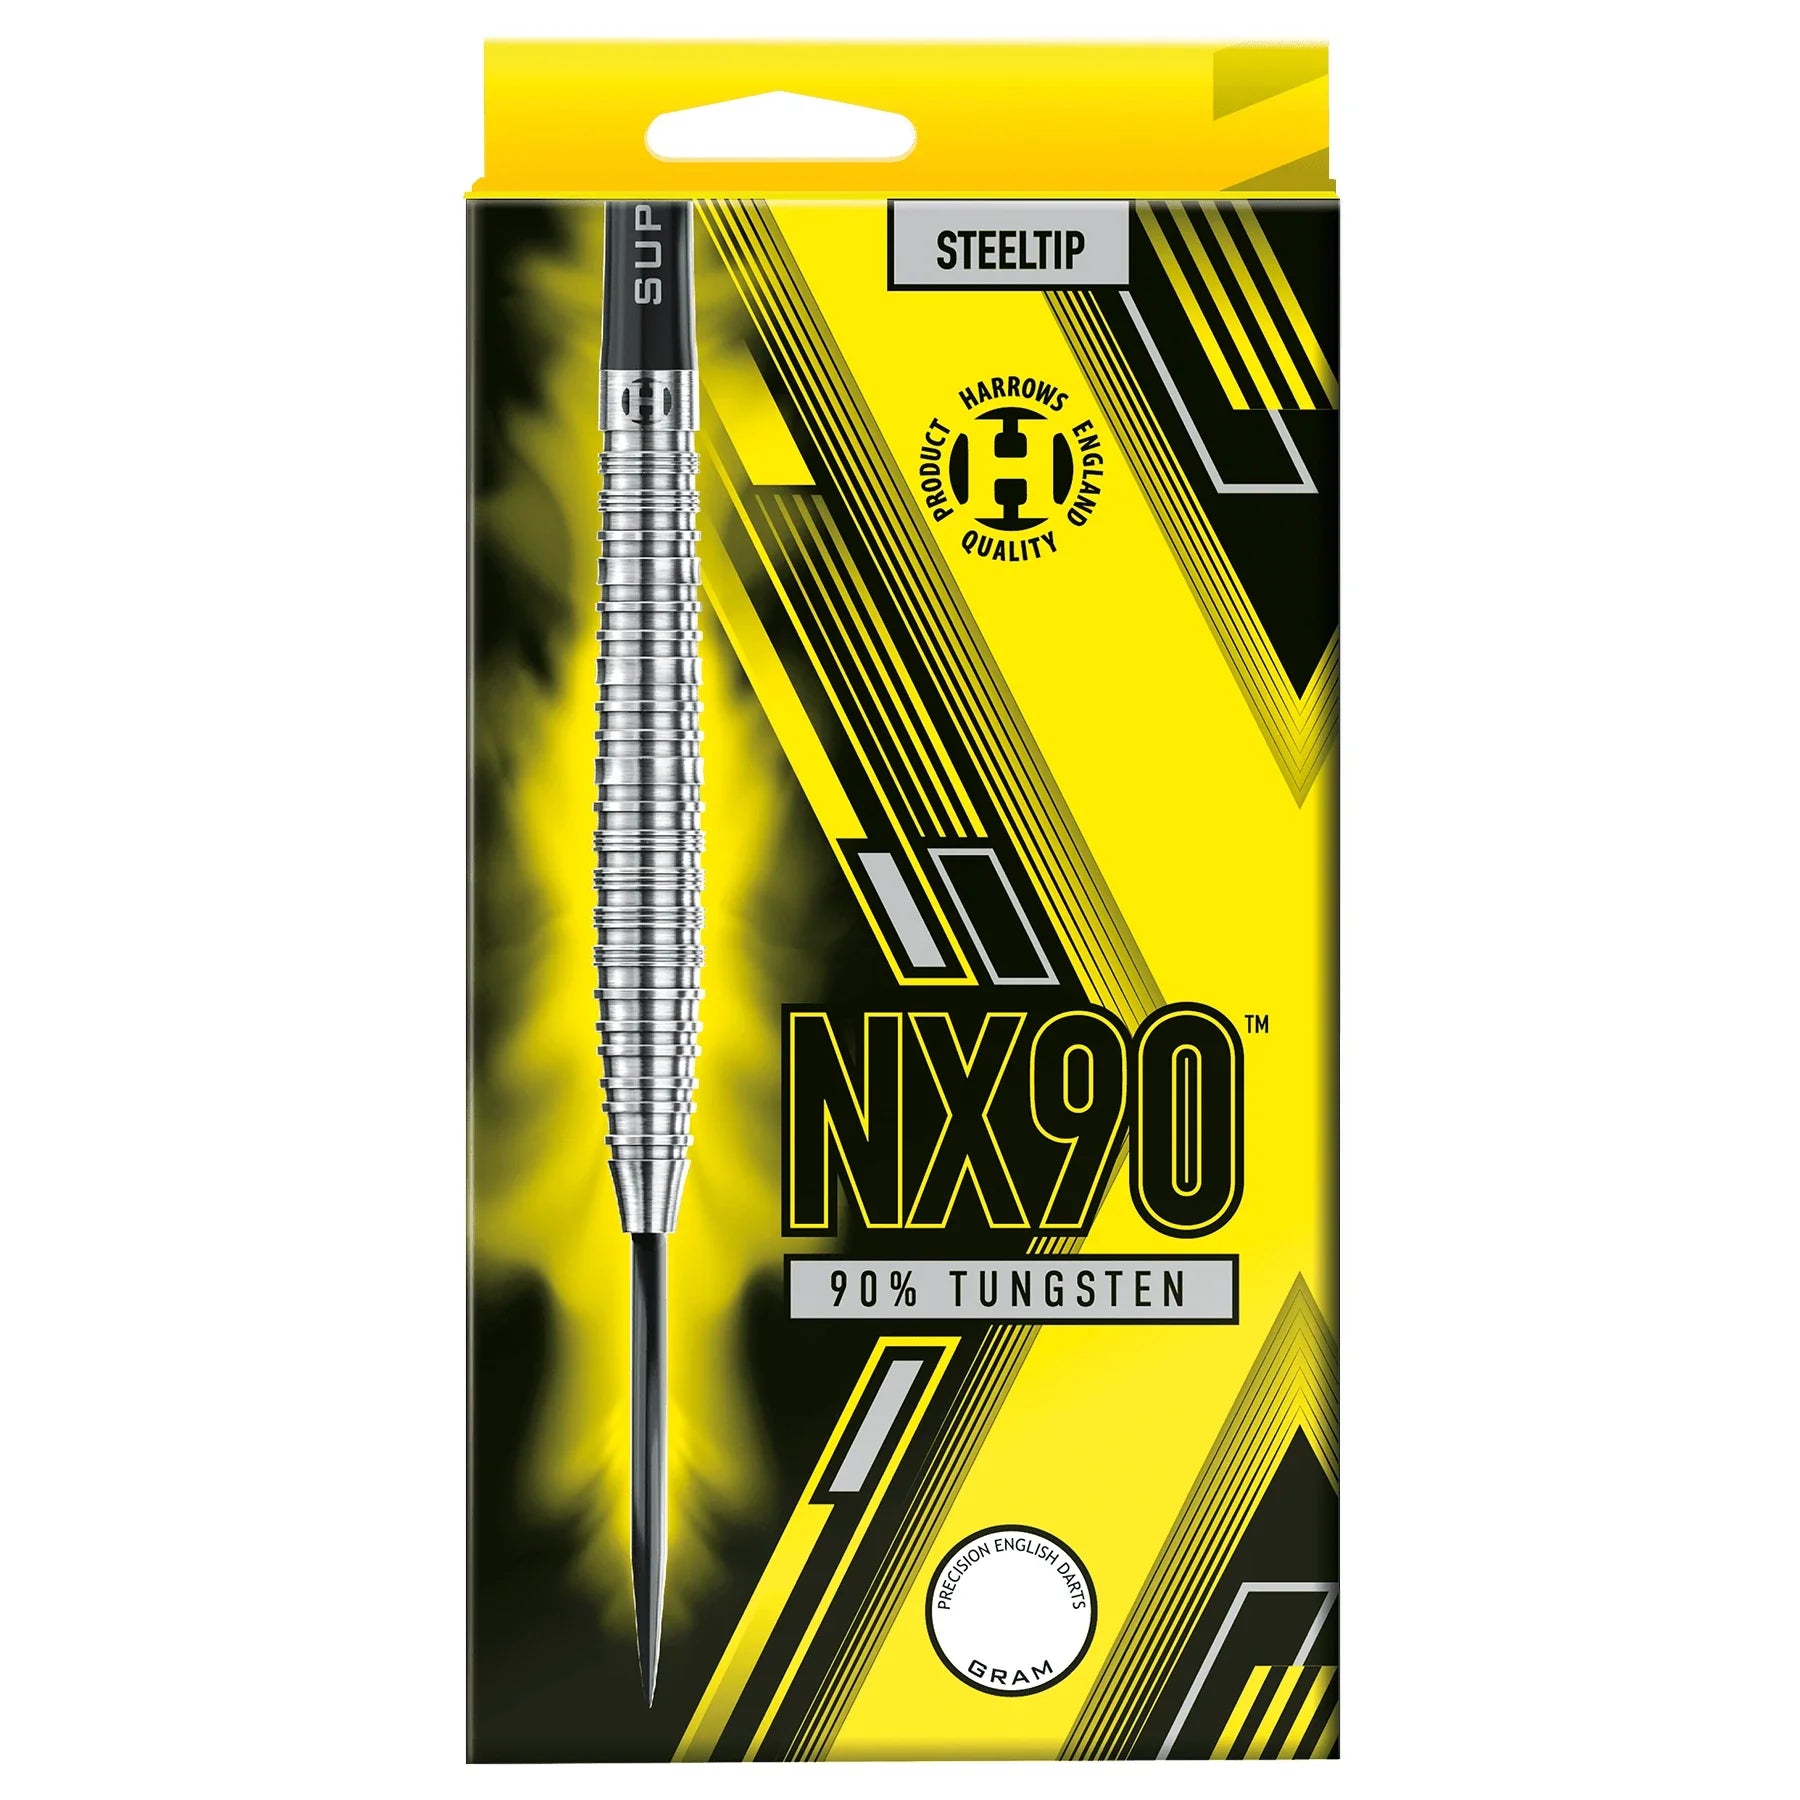 Harrows NX90 23g Darts